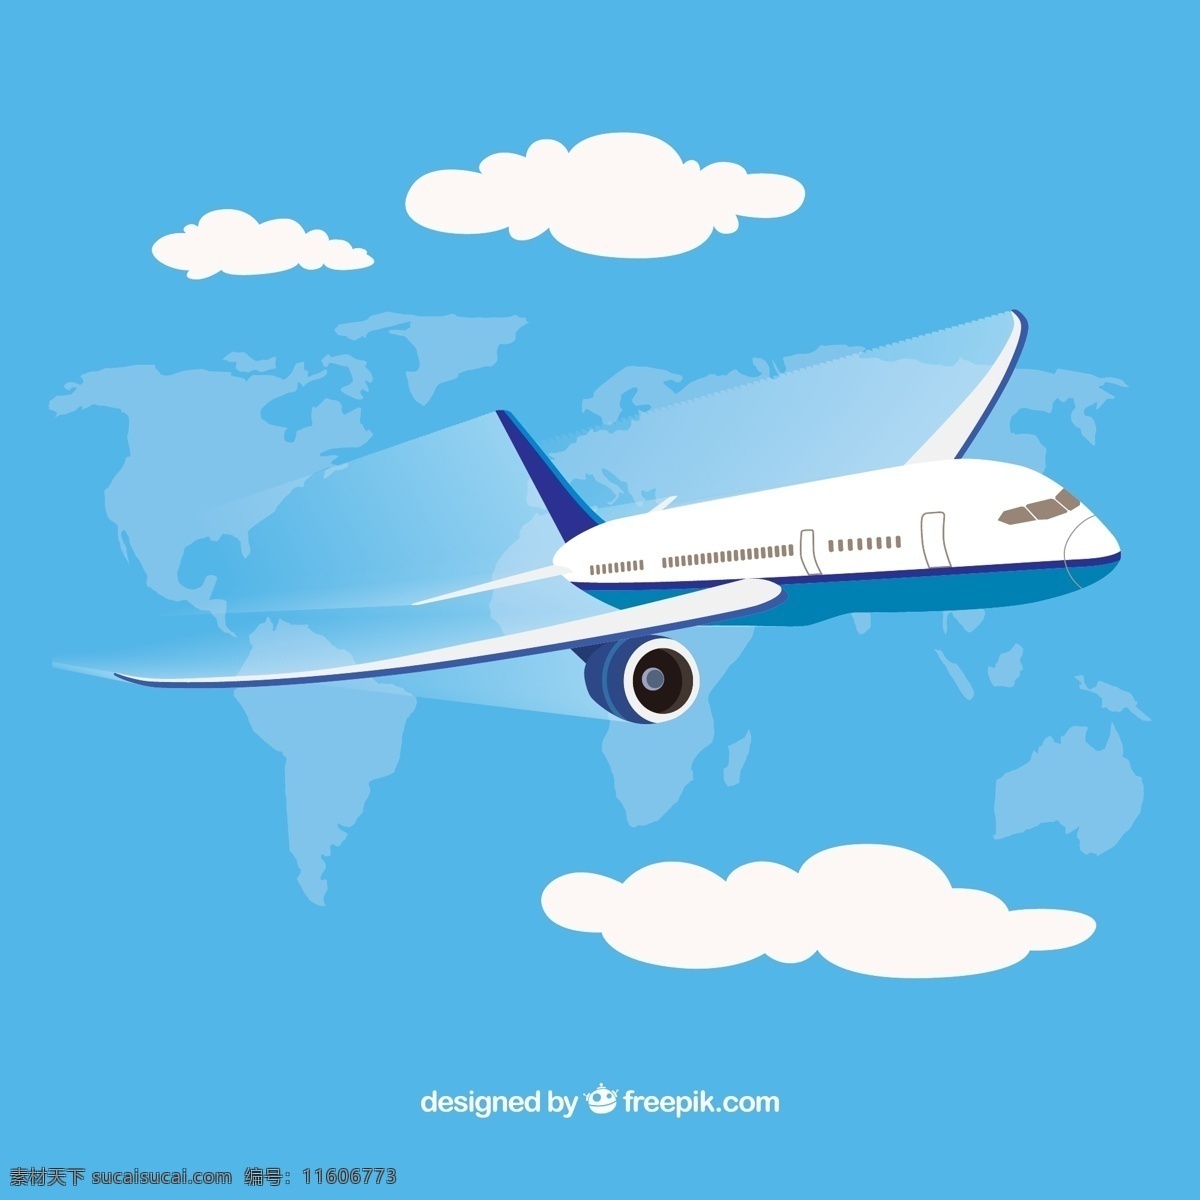 飞行 环球 航空飞机 云朵 客机 交通工具设计 现代科技 交通工具